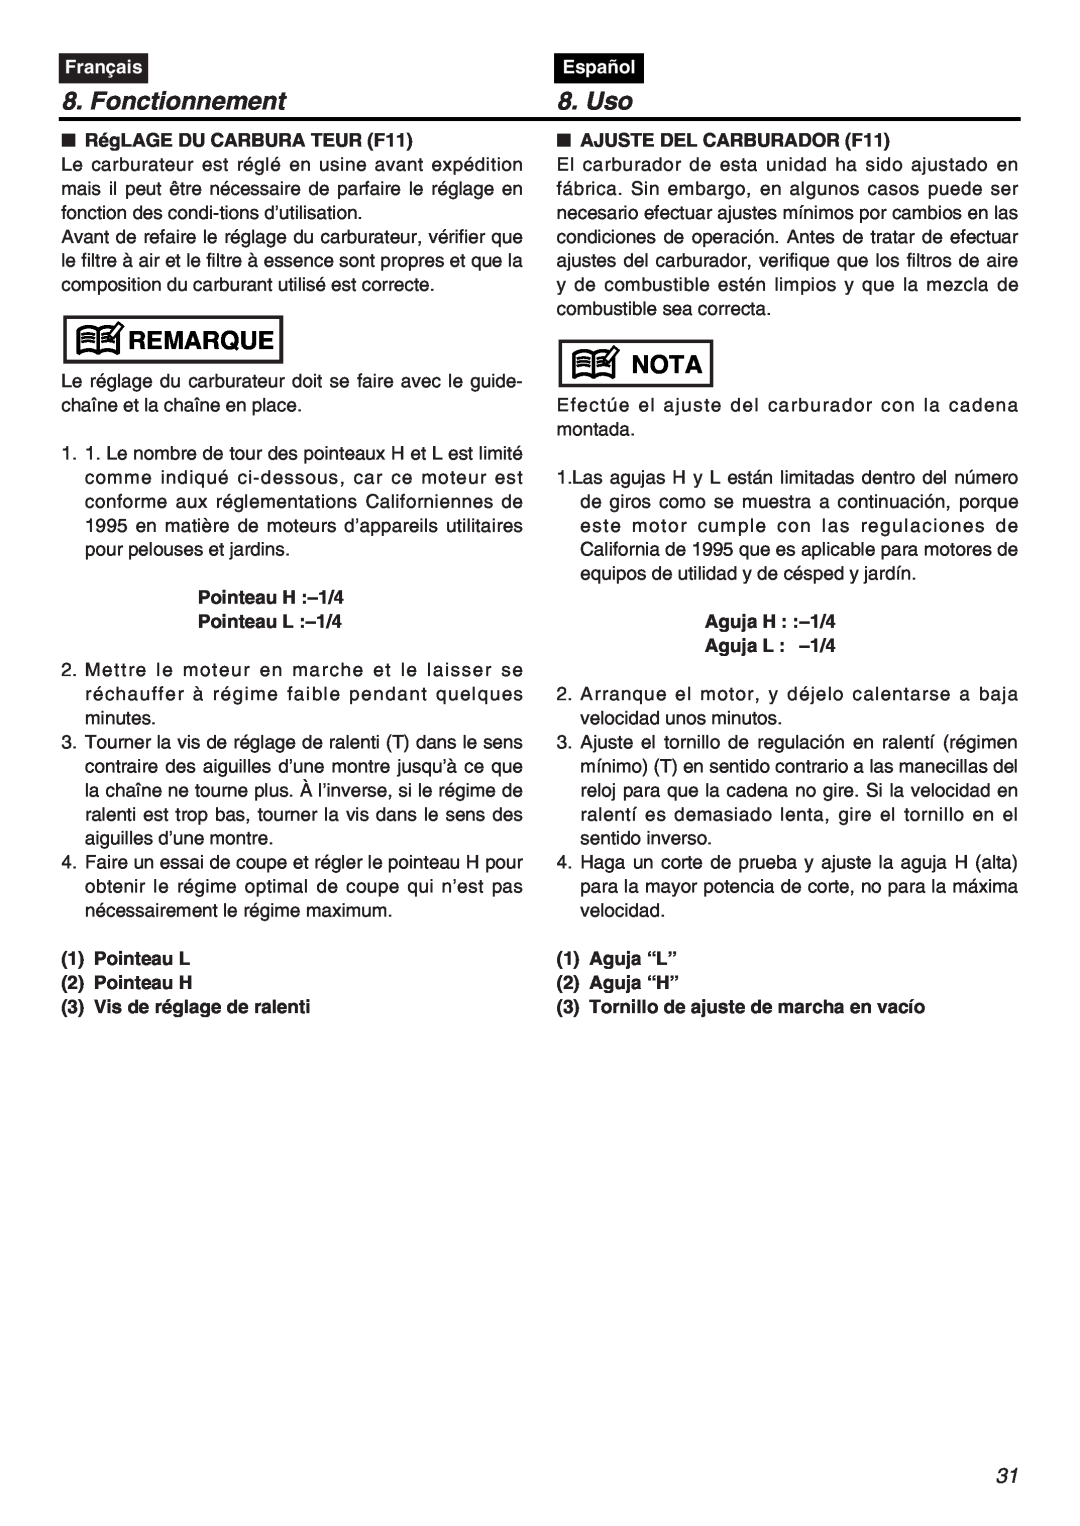 RedMax G5000AVS manual Fonctionnement, Uso, Remarque, Nota, Français, Español, RégLAGE DU CARBURA TEUR F11 